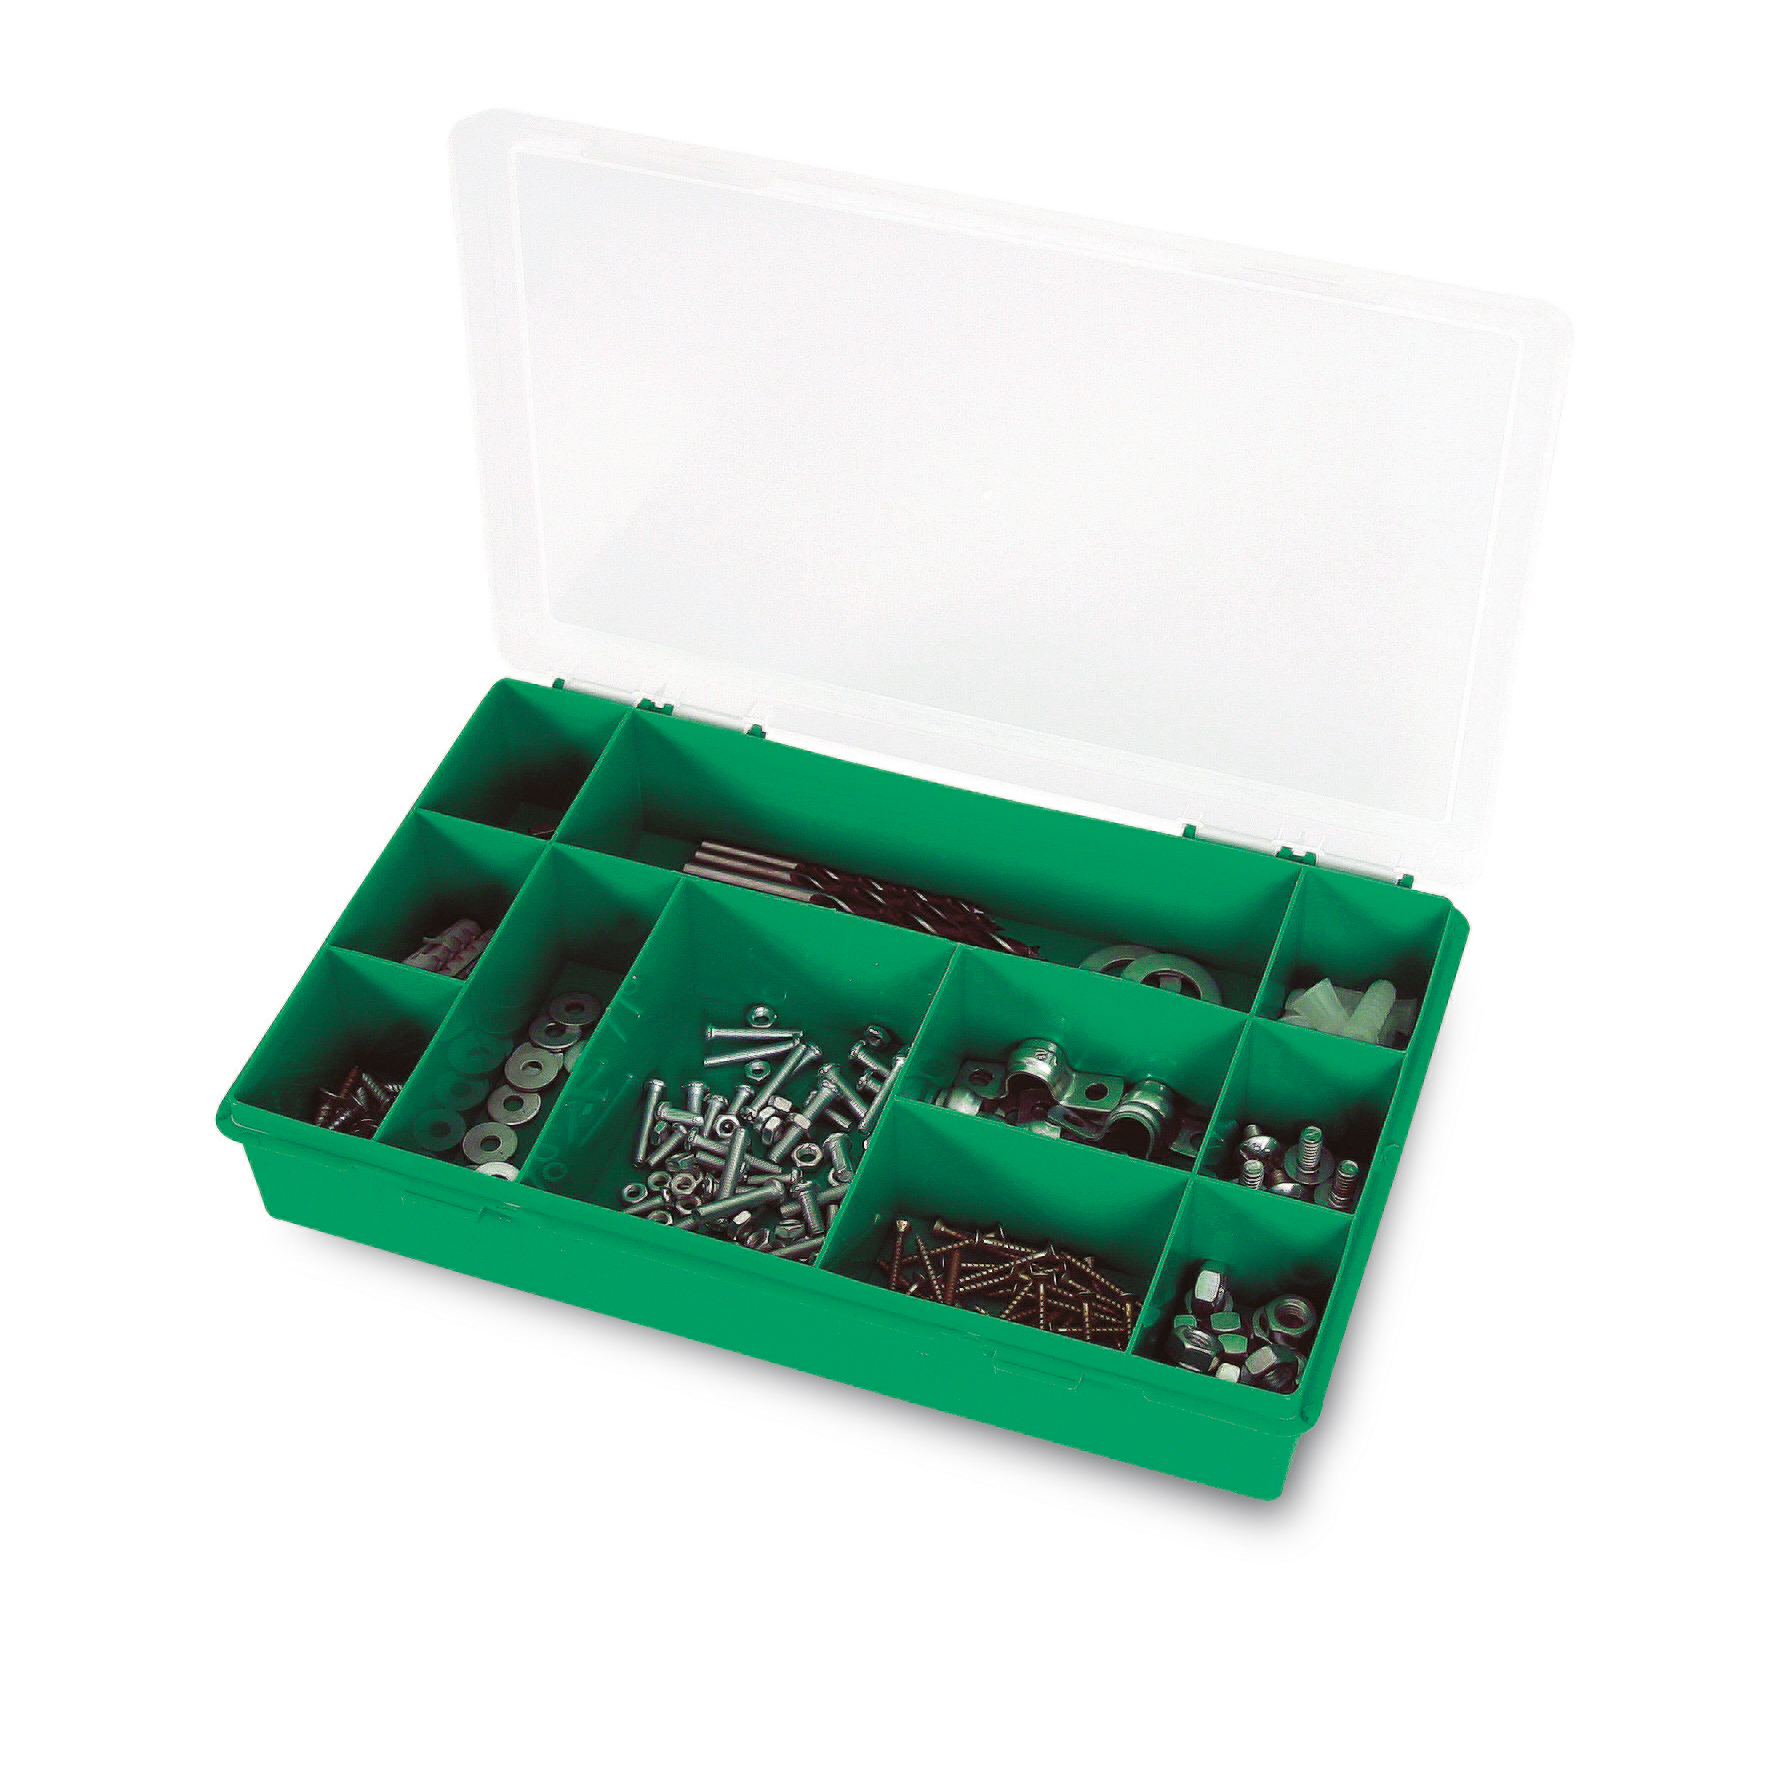 Органайзер Tayg Box 12-11 Estuche, для хранения мелких предметов, 29х19,5х5,4 см, зеленый (061103) - фото 2